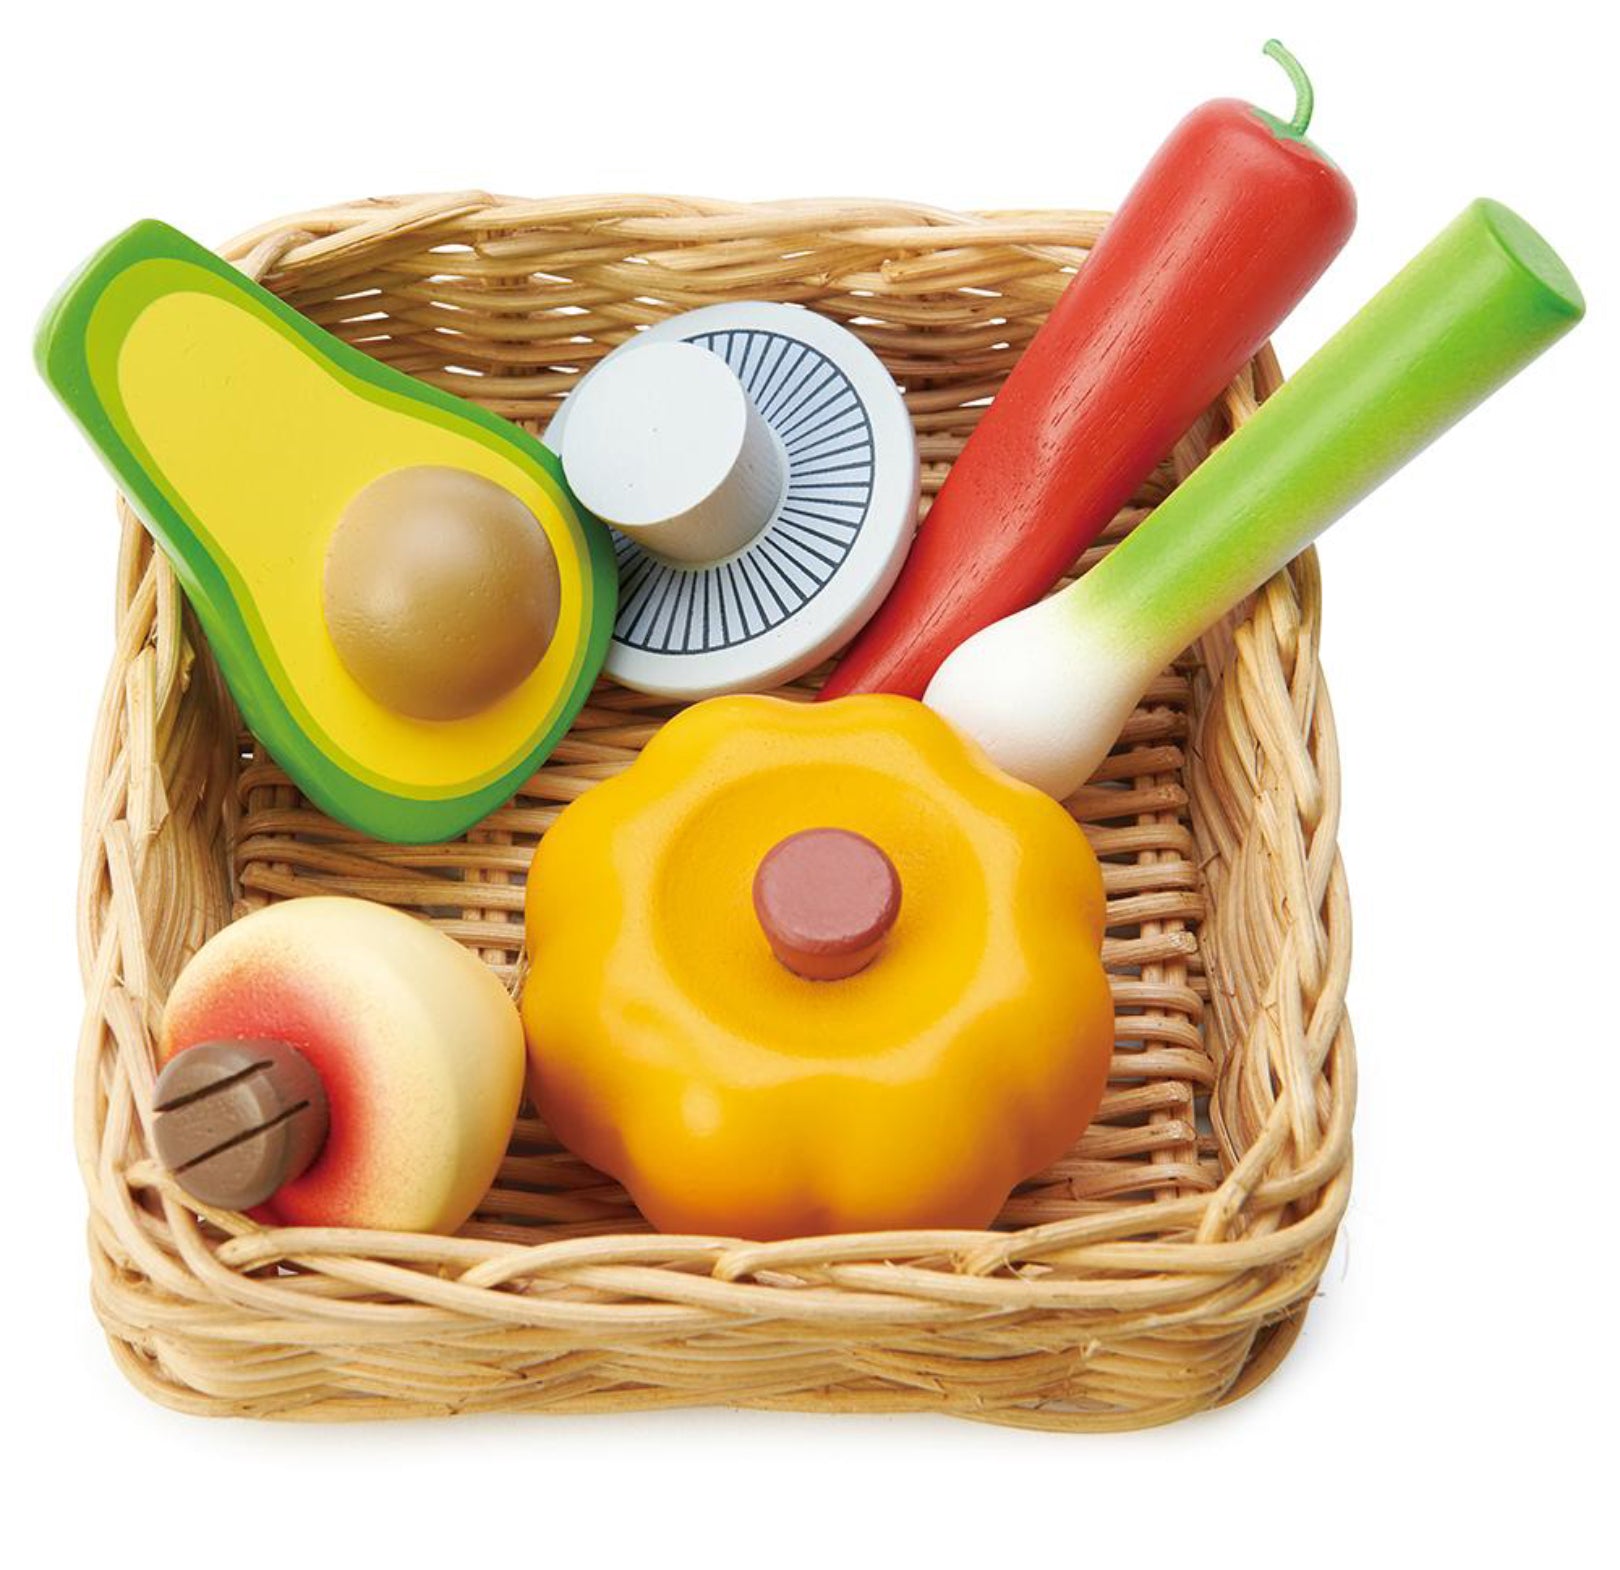 SALE Tenderleaf Toys Wicker Basket & Wooden Veggies